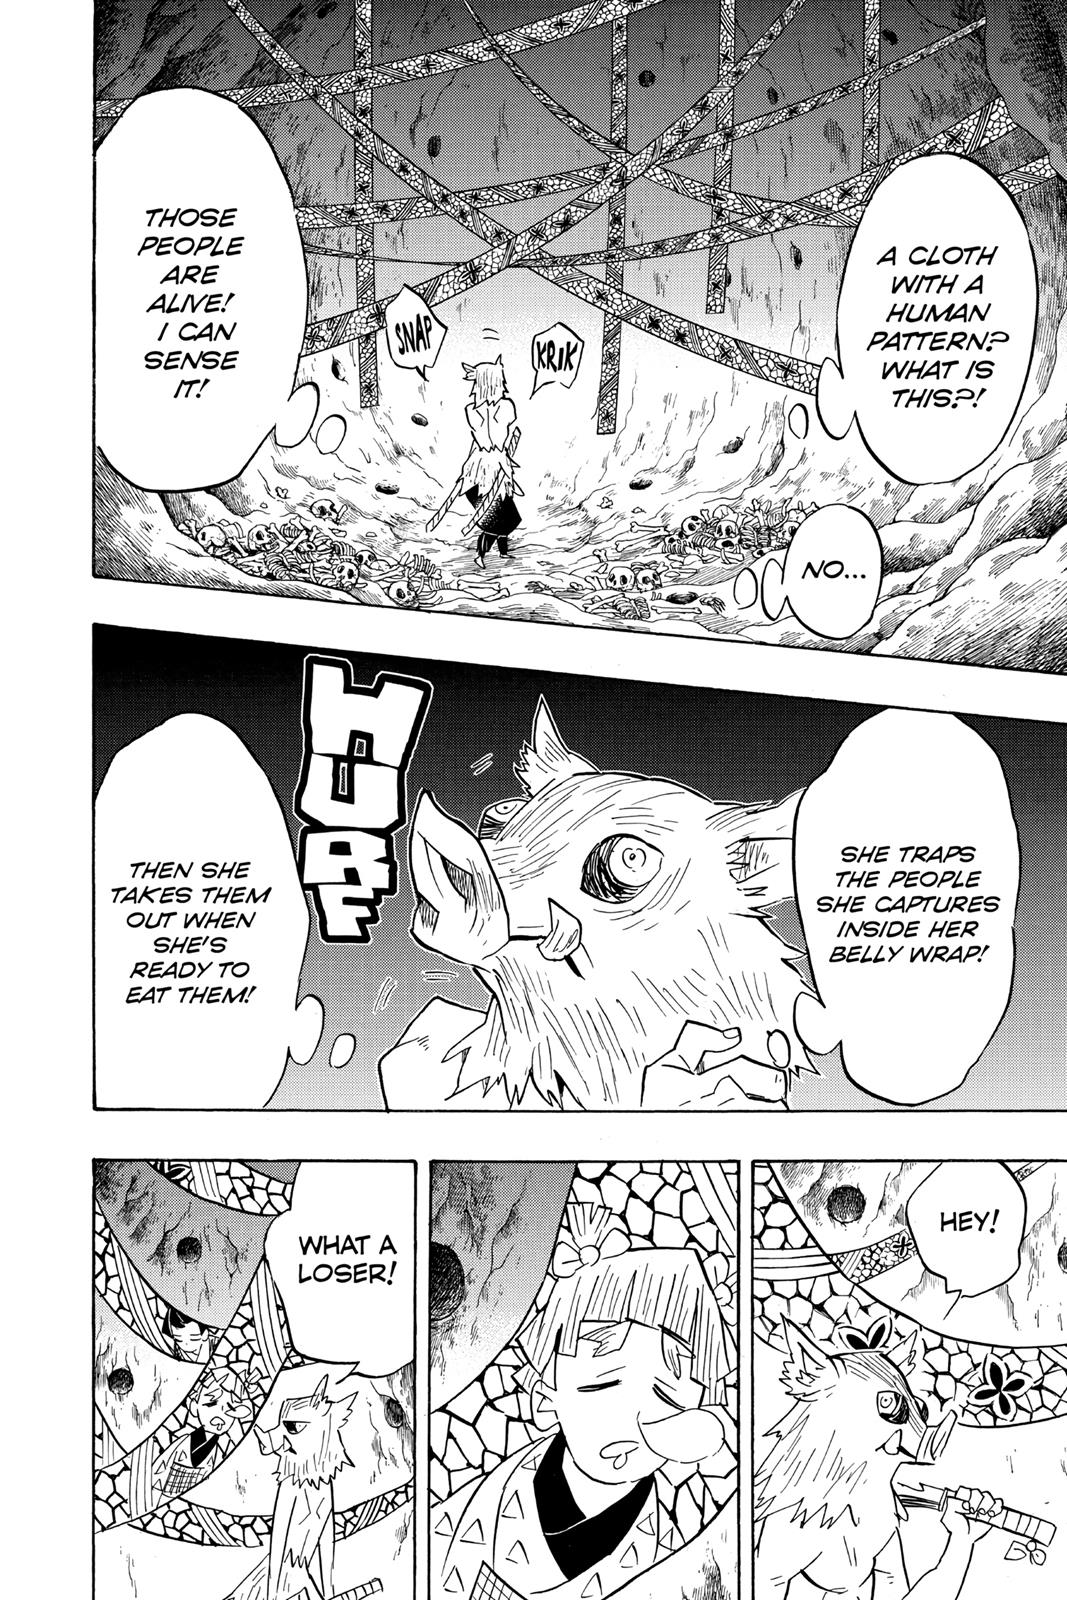 Demon Slayer Manga Manga Chapter - 78 - image 16